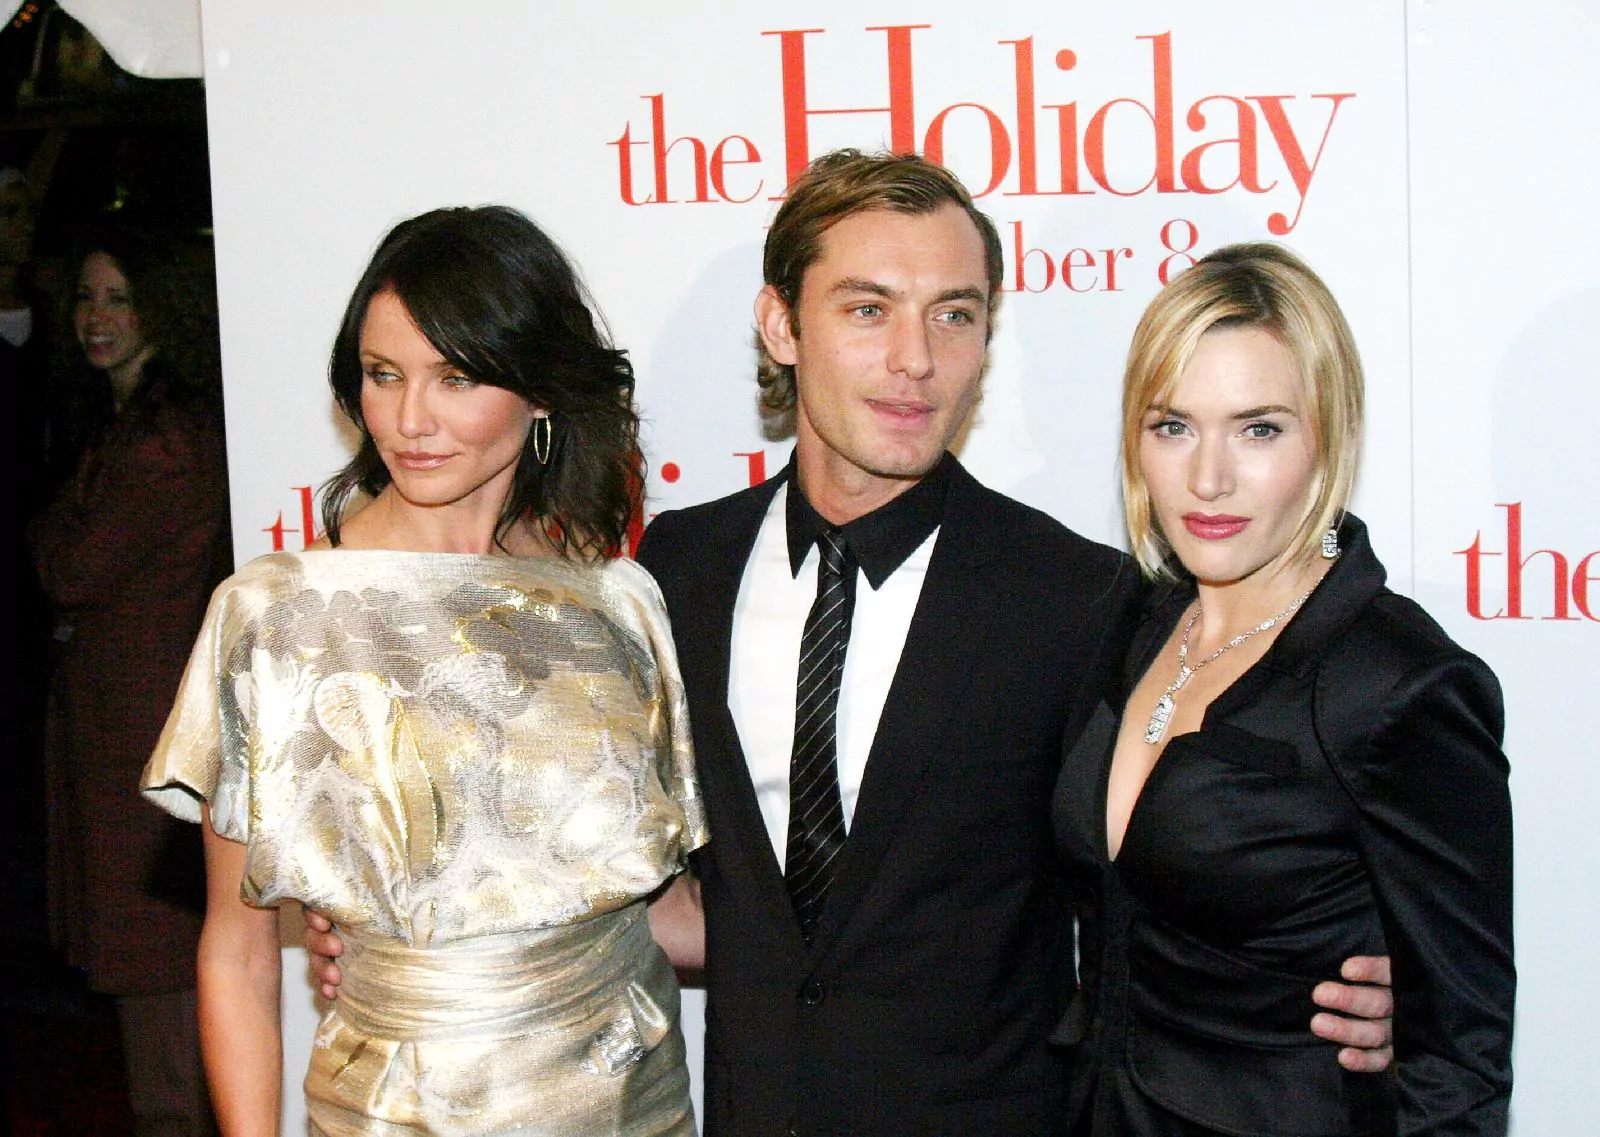 Камерон Диаз, Джуд Лоу и Кейт Уинслет на премьере фильма «Отпуск по обмену» в Нью-Йорке, 29 ноября 2006 г.